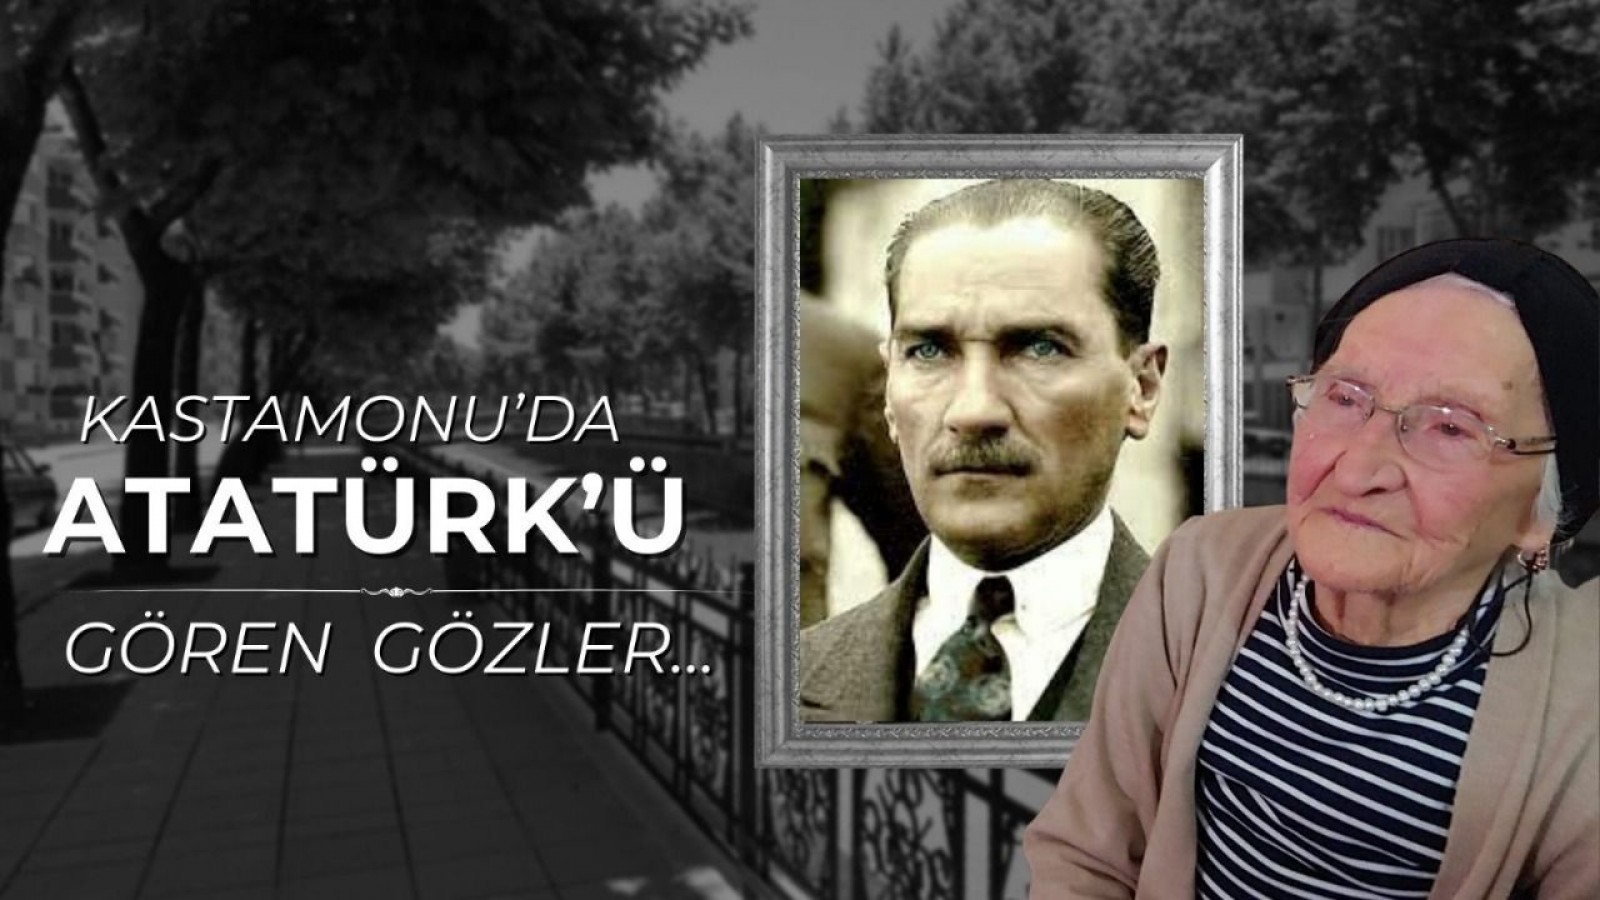 Kastamonu'nun 'Atatürk'ü gören' gözleri...